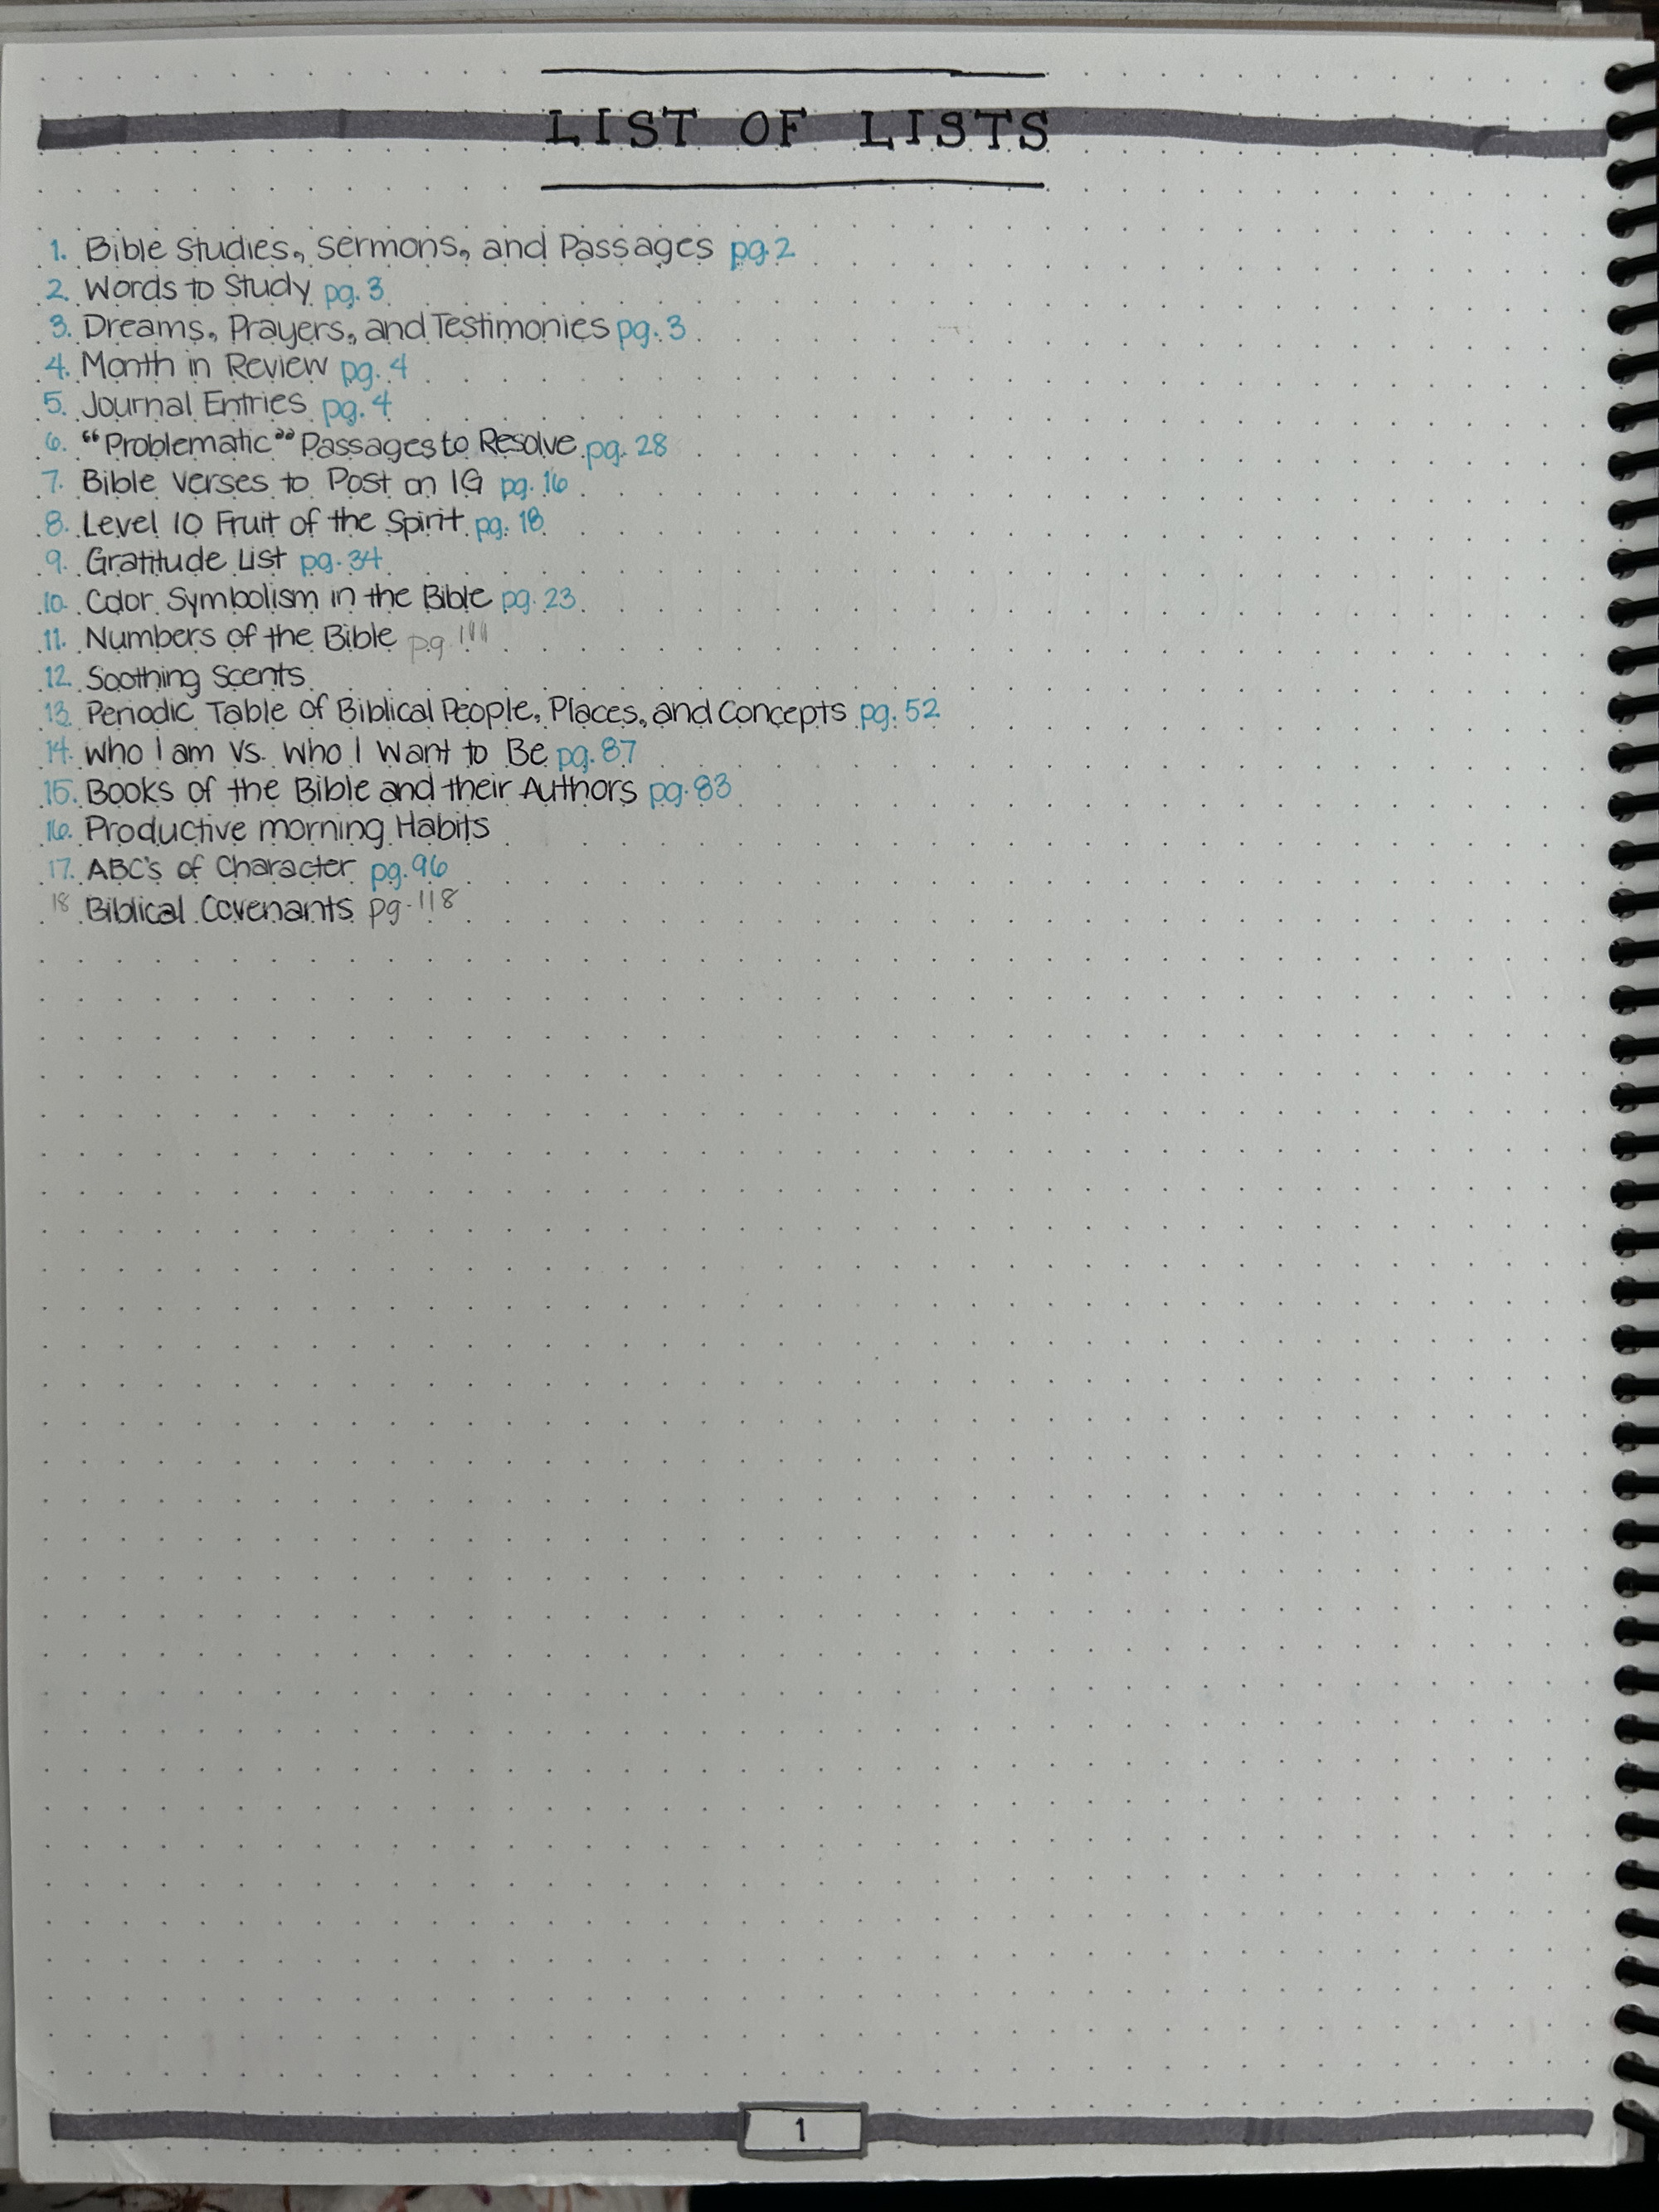 List of Lists